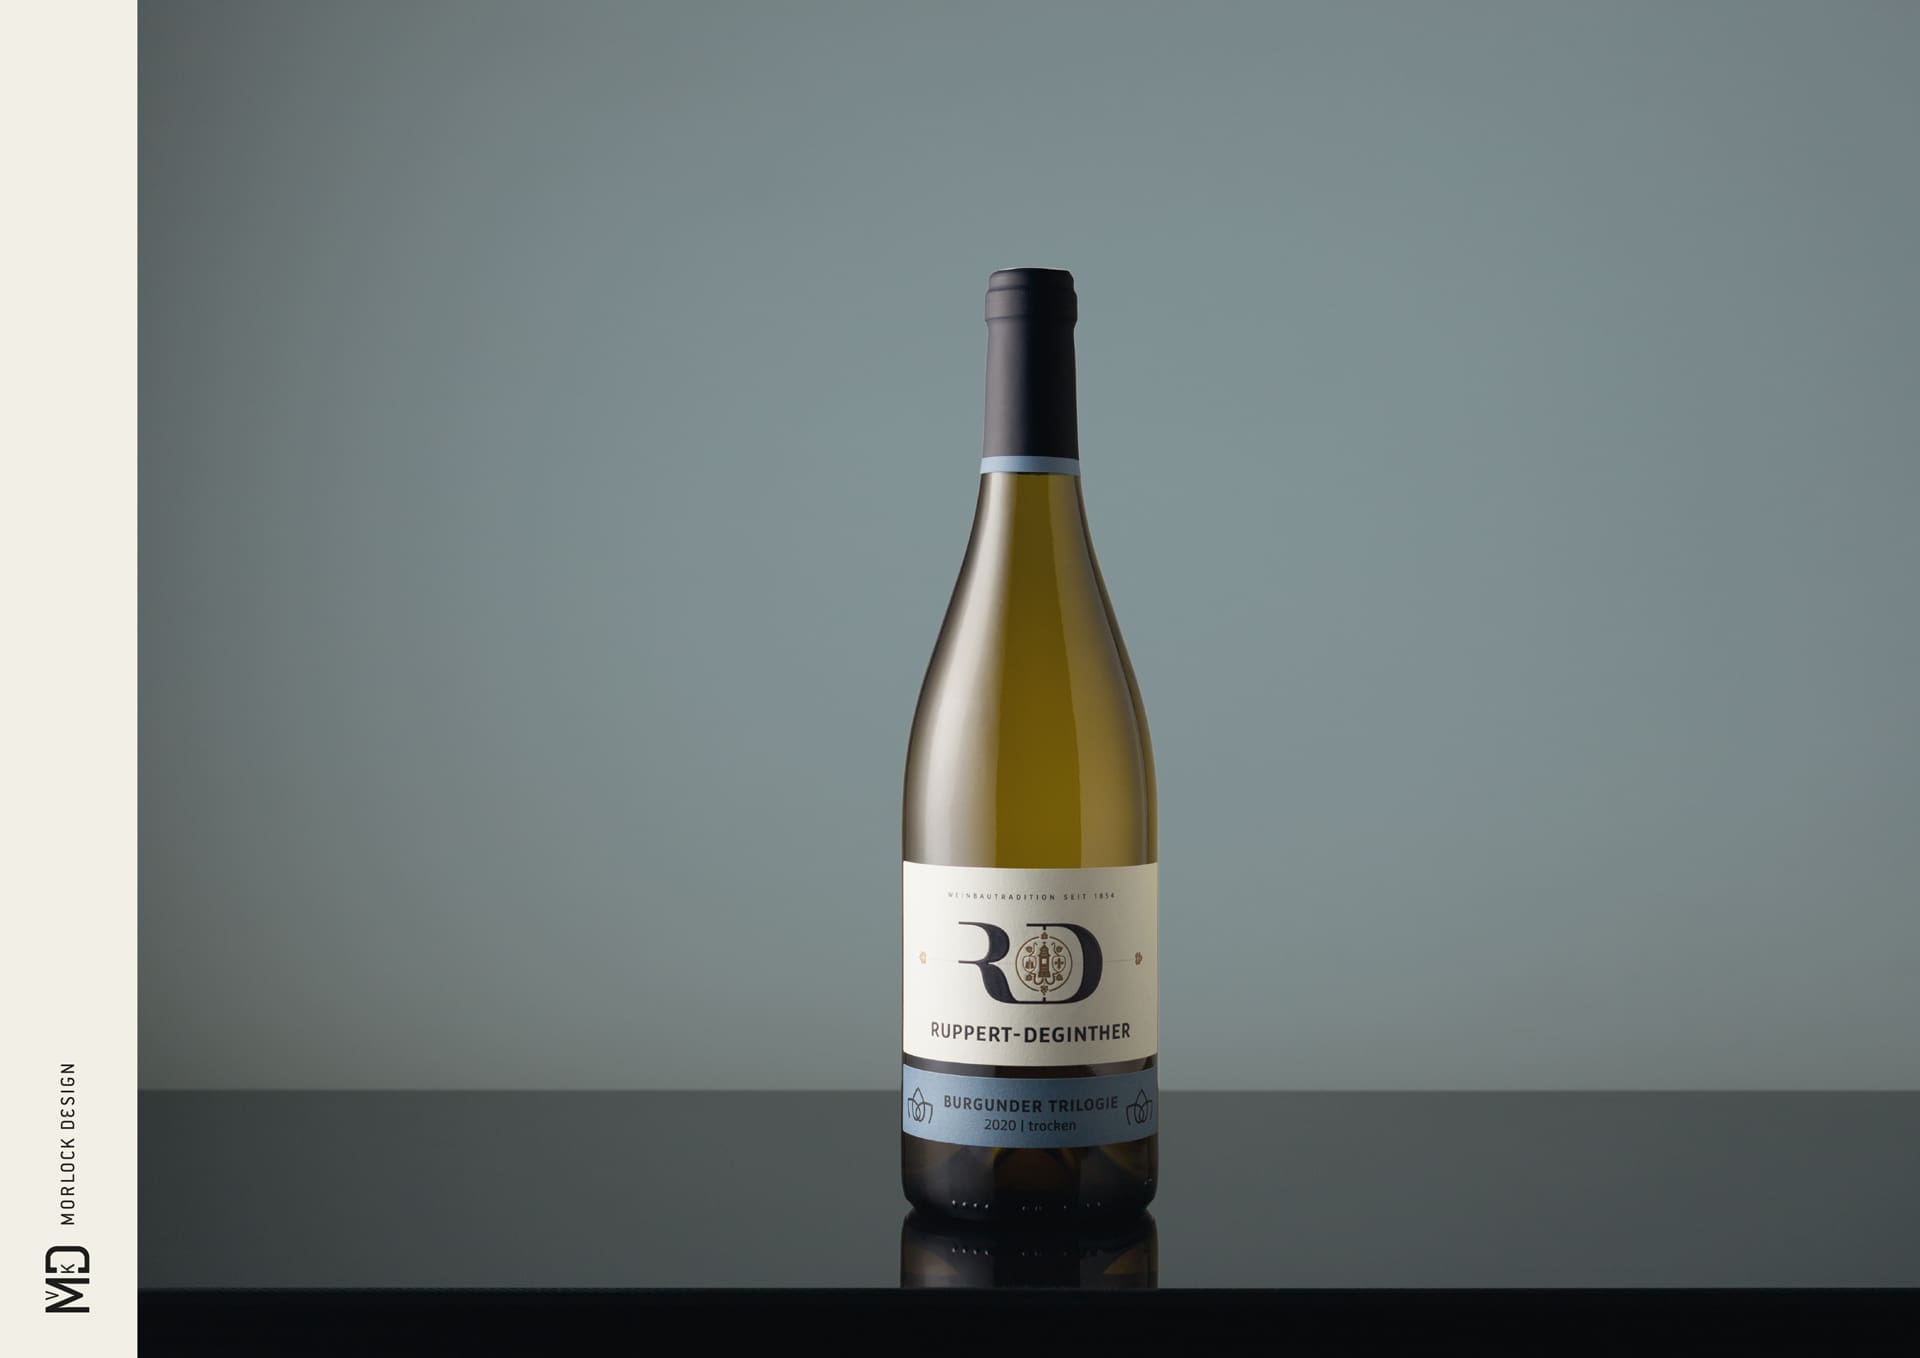 Corporate Identity Design für Ruppert-Deginther | Ein ausgezeichnetes Weingut in Rheinhessen | Produkt-Fotoshooting der Ortsweine